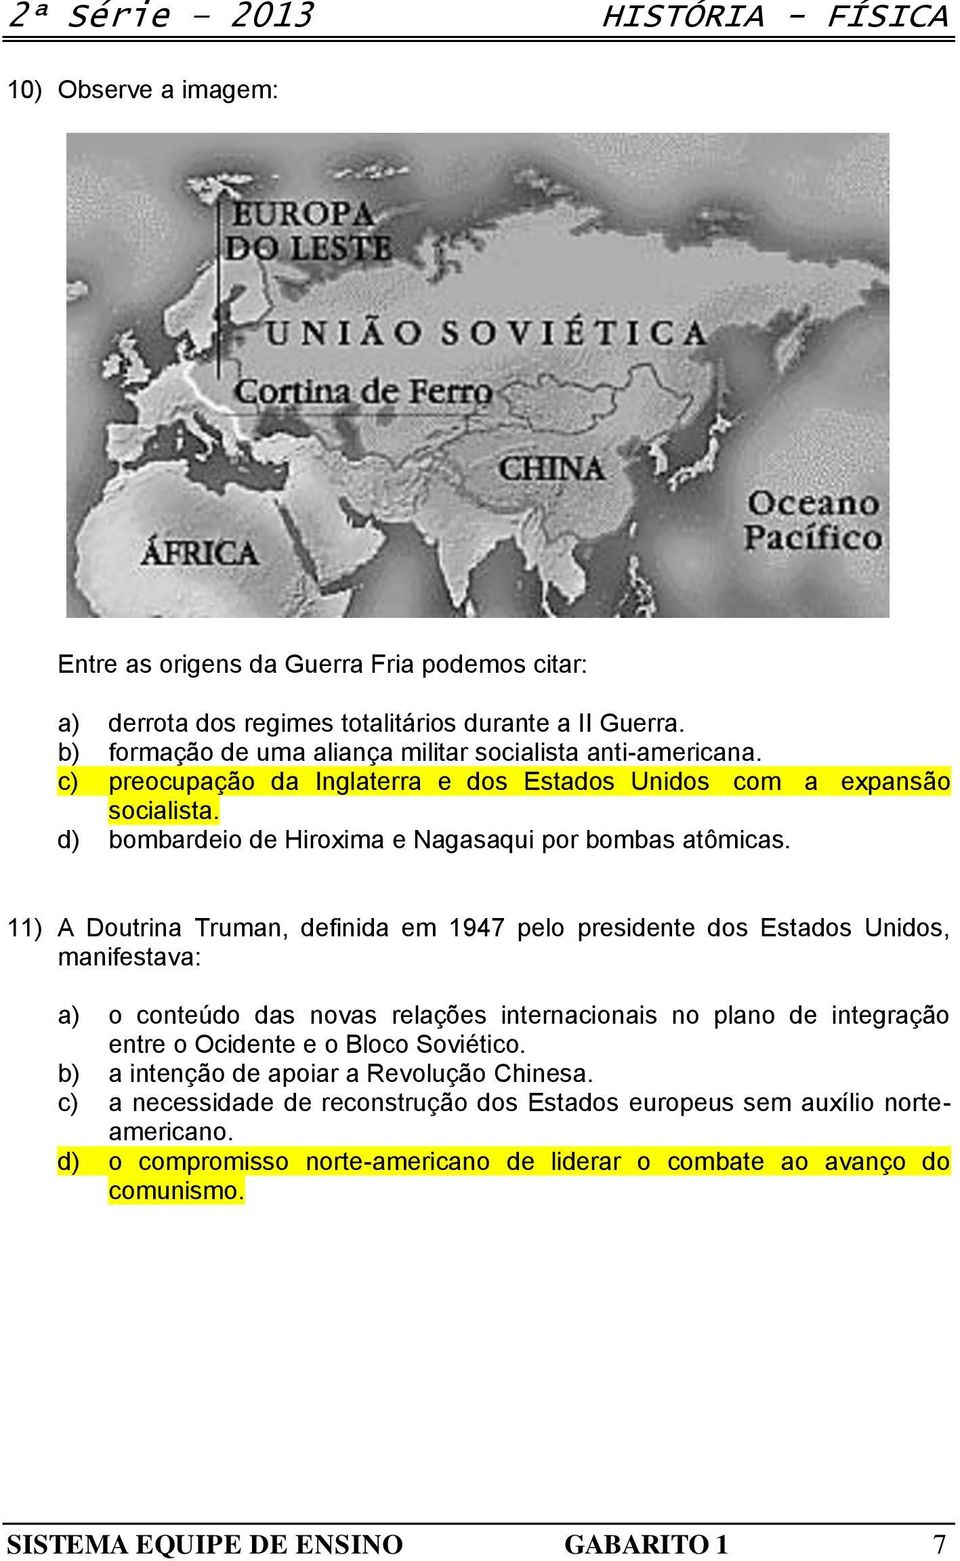 11) A Doutrina Truman, definida em 1947 pelo presidente dos Estados Unidos, manifestava: a) o conteúdo das novas relações internacionais no plano de integração entre o Ocidente e o Bloco Soviético.